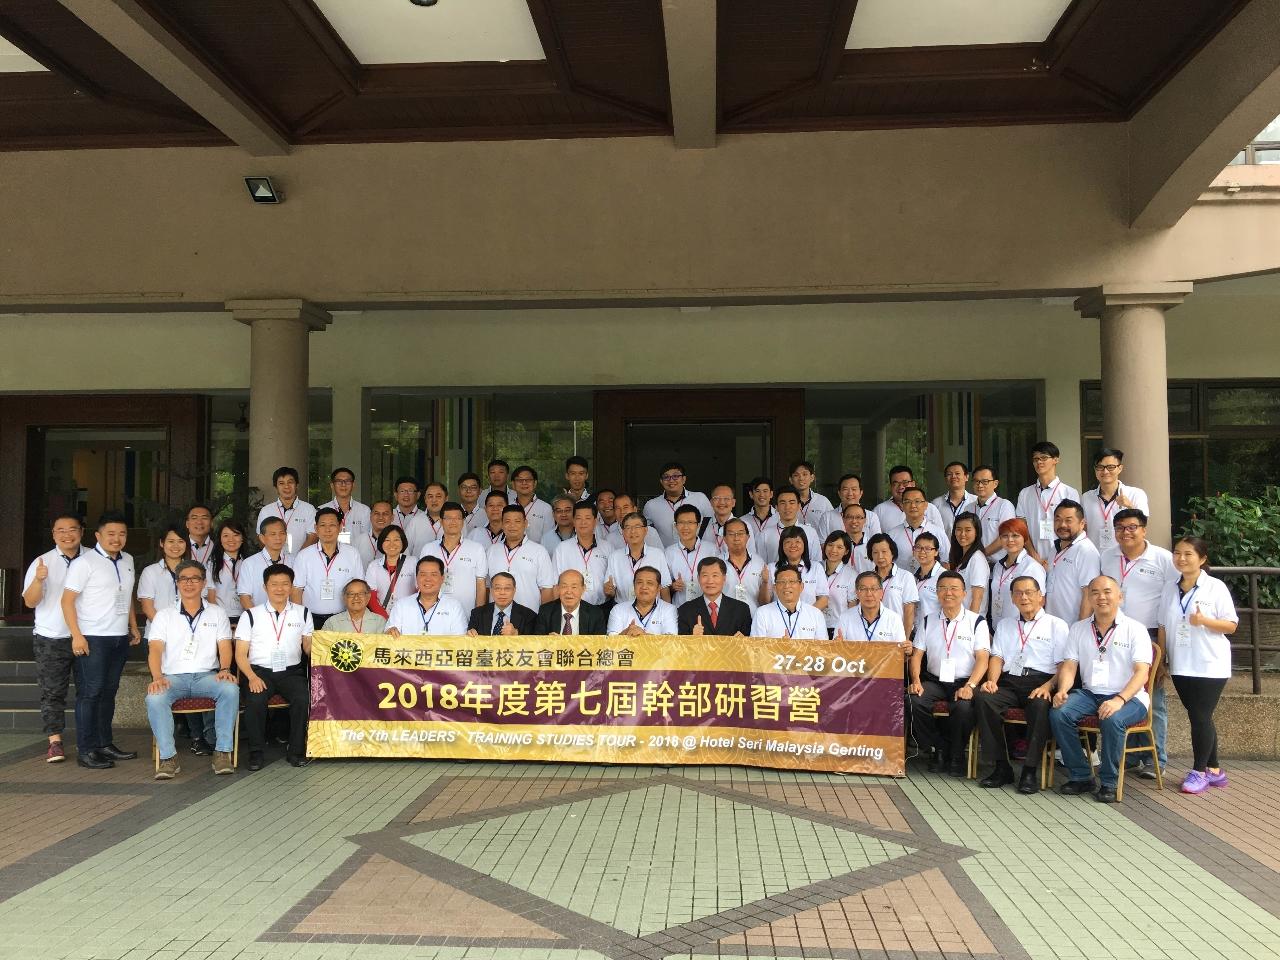 尹公使新垣(第一排右6)出席馬來西亞留臺校友會聯合總會舉辦之「2018年第七屆幹部培訓營」活動與全體參加人員合影。